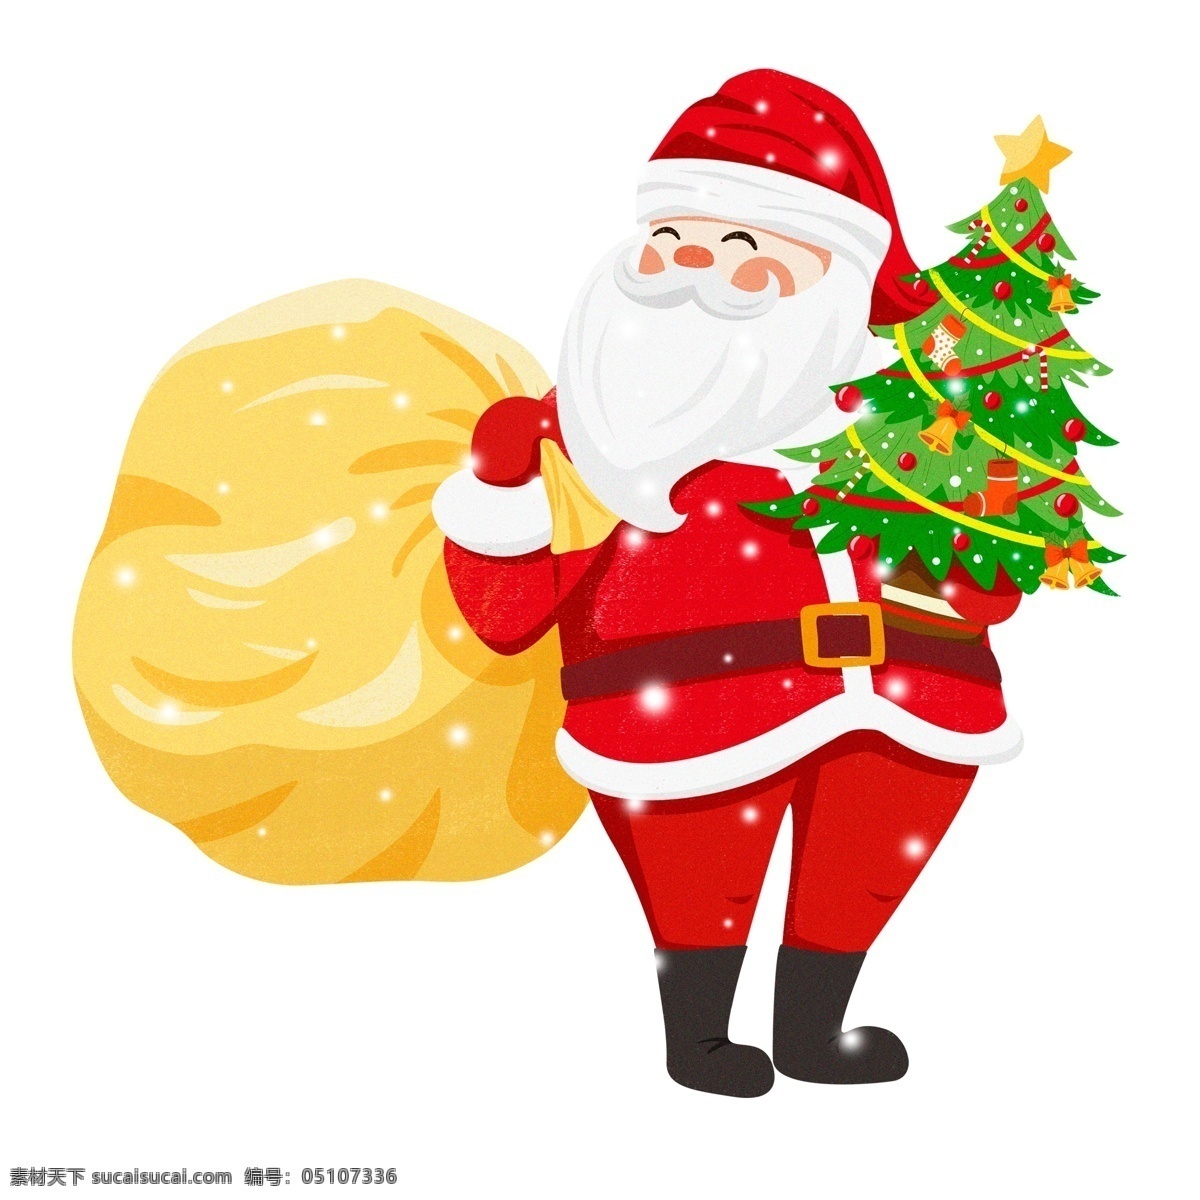 清新 唯美 圣诞 老公公 礼物 圣诞树 插画 手绘 大雪 圣诞老人 圣诞老公公 麻袋